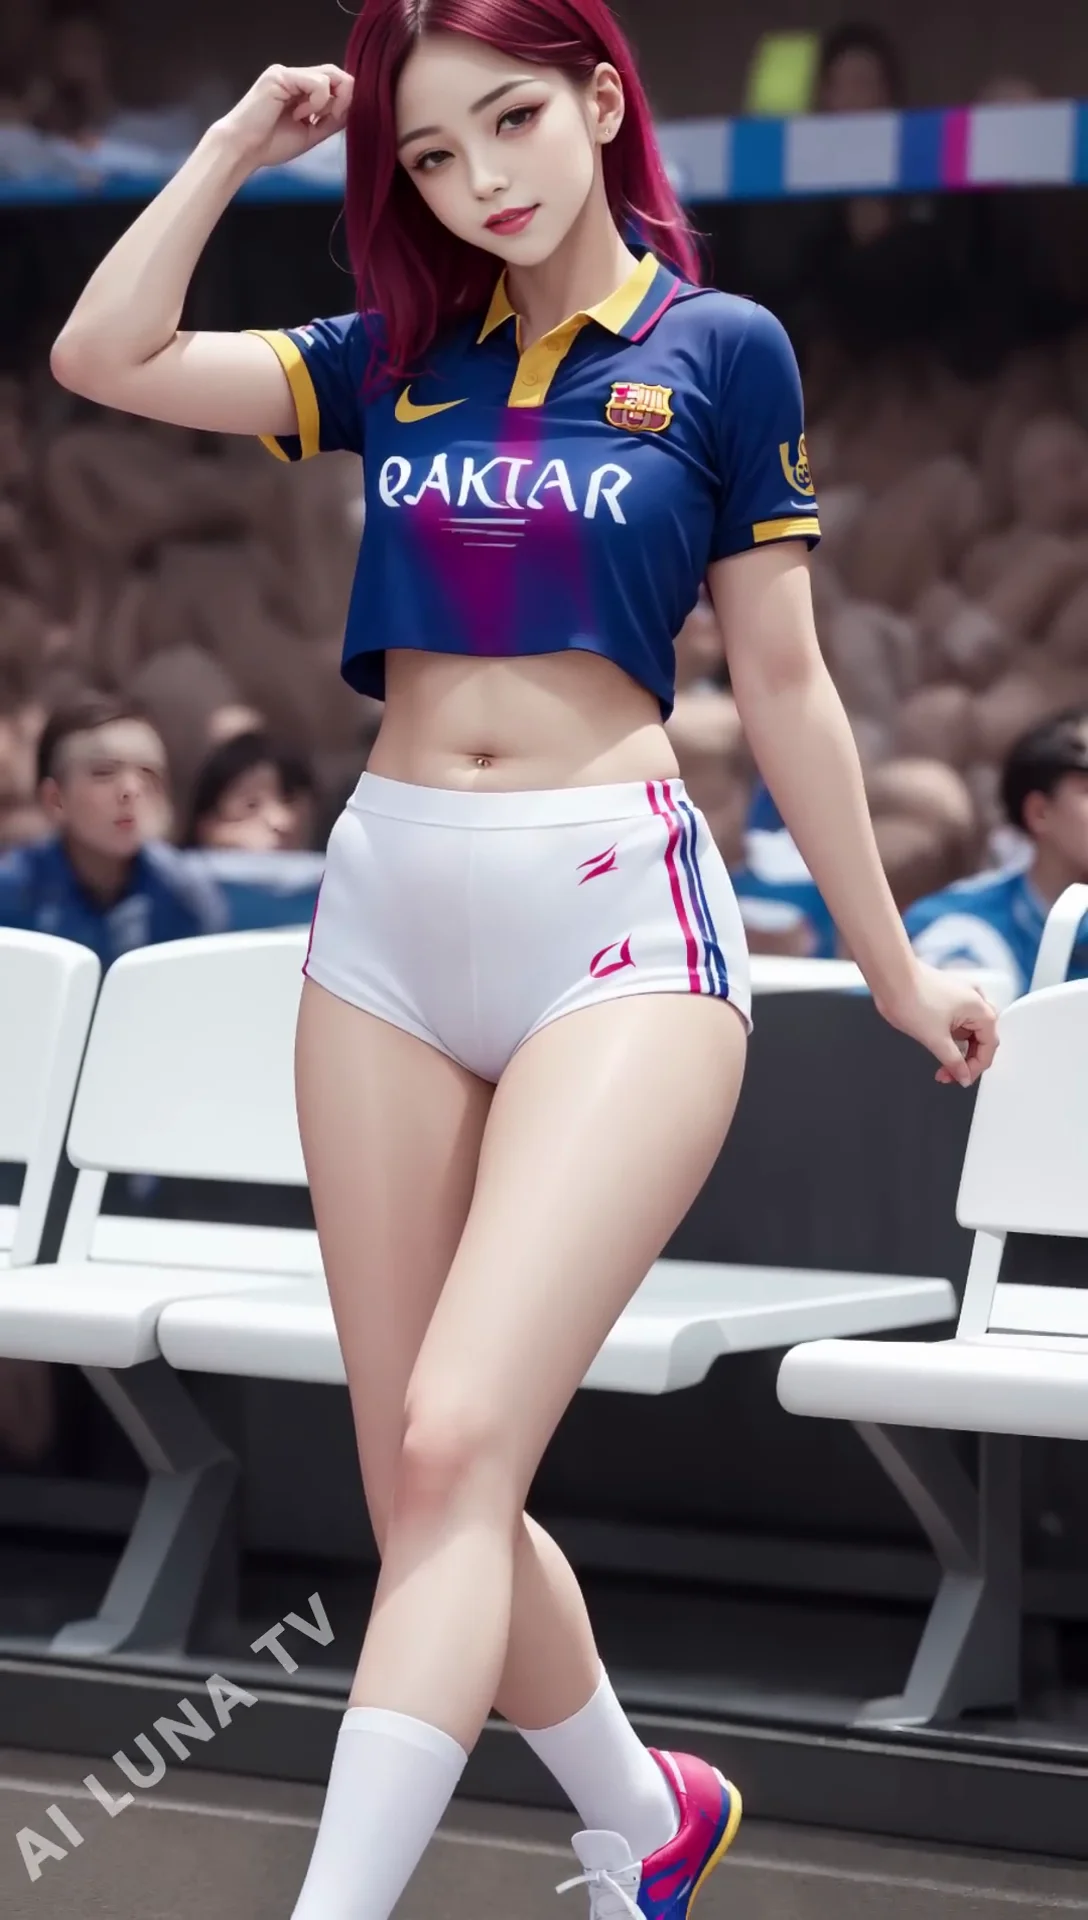 Ai Lookbook FC Barcelona Girl Images - 바르셀로나 걸스 팬 01